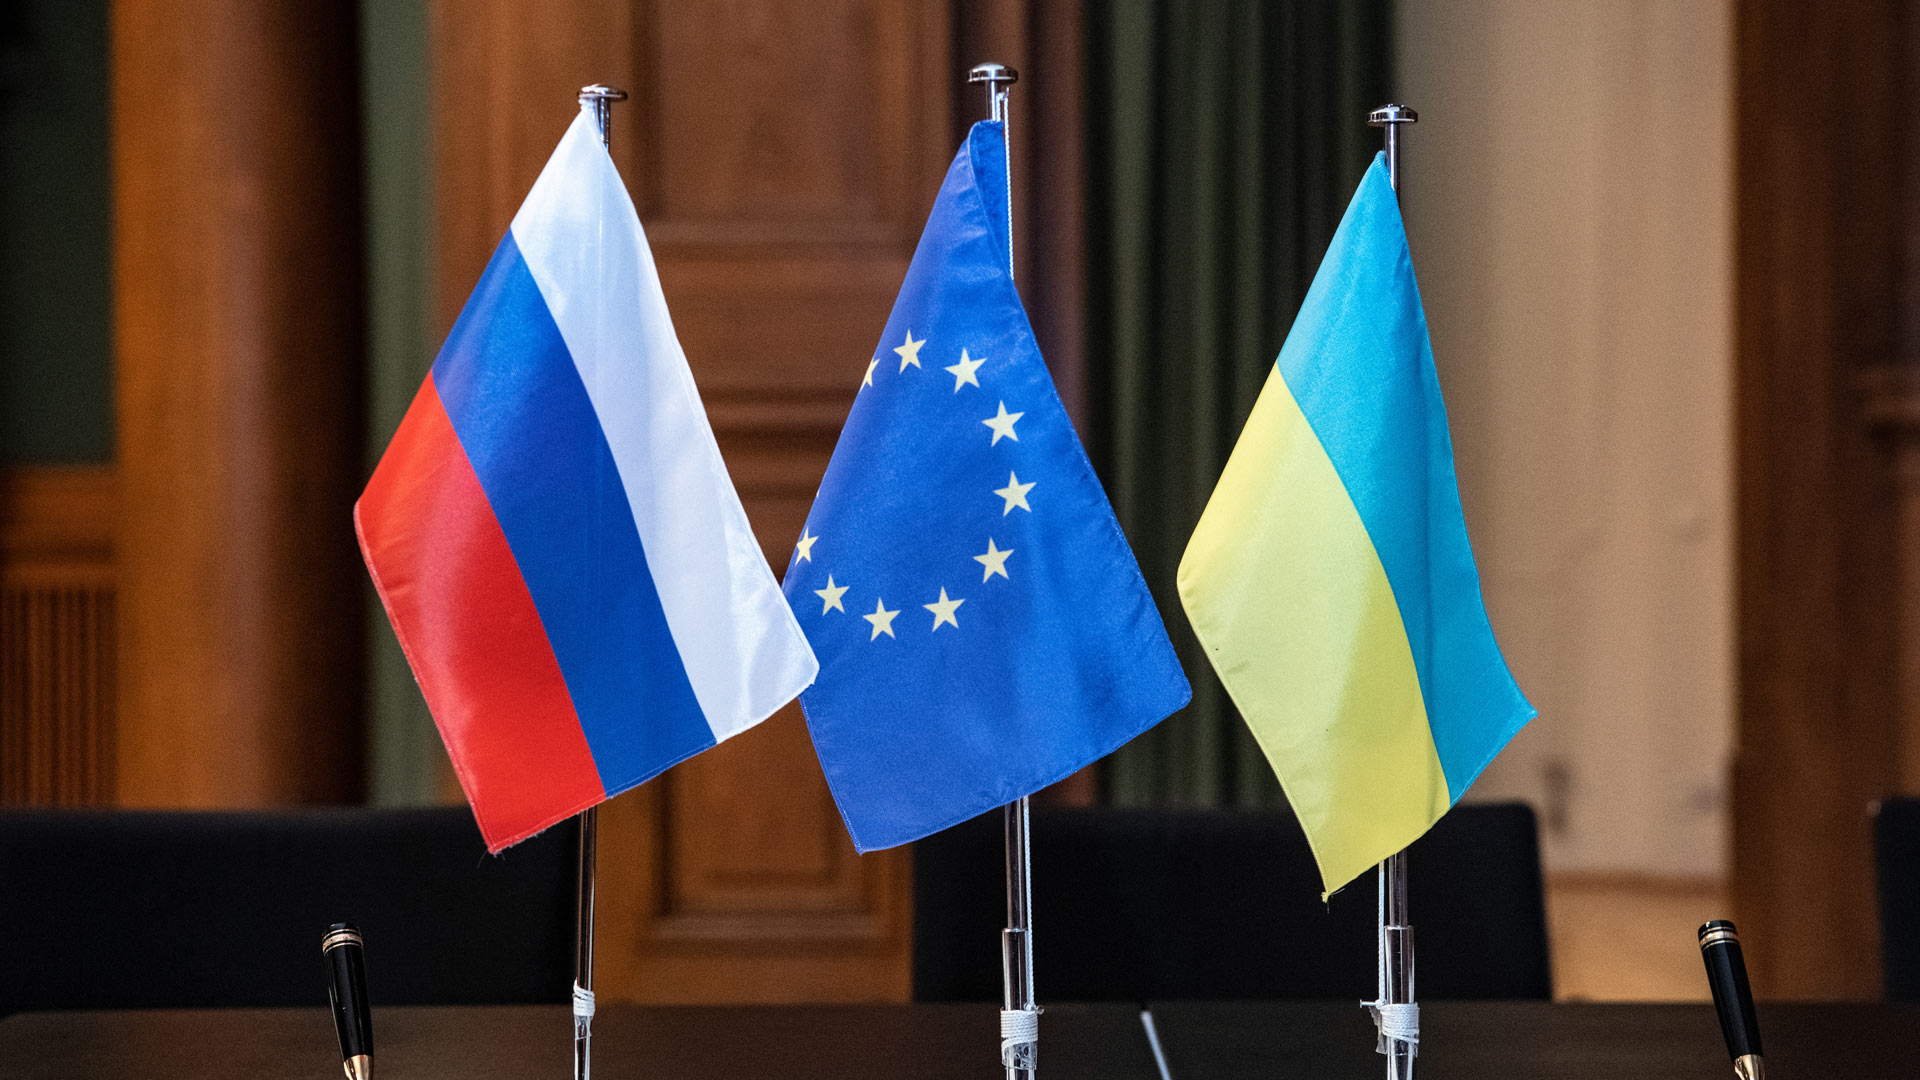 Flaggen von Russland, der EU und der Ukraine